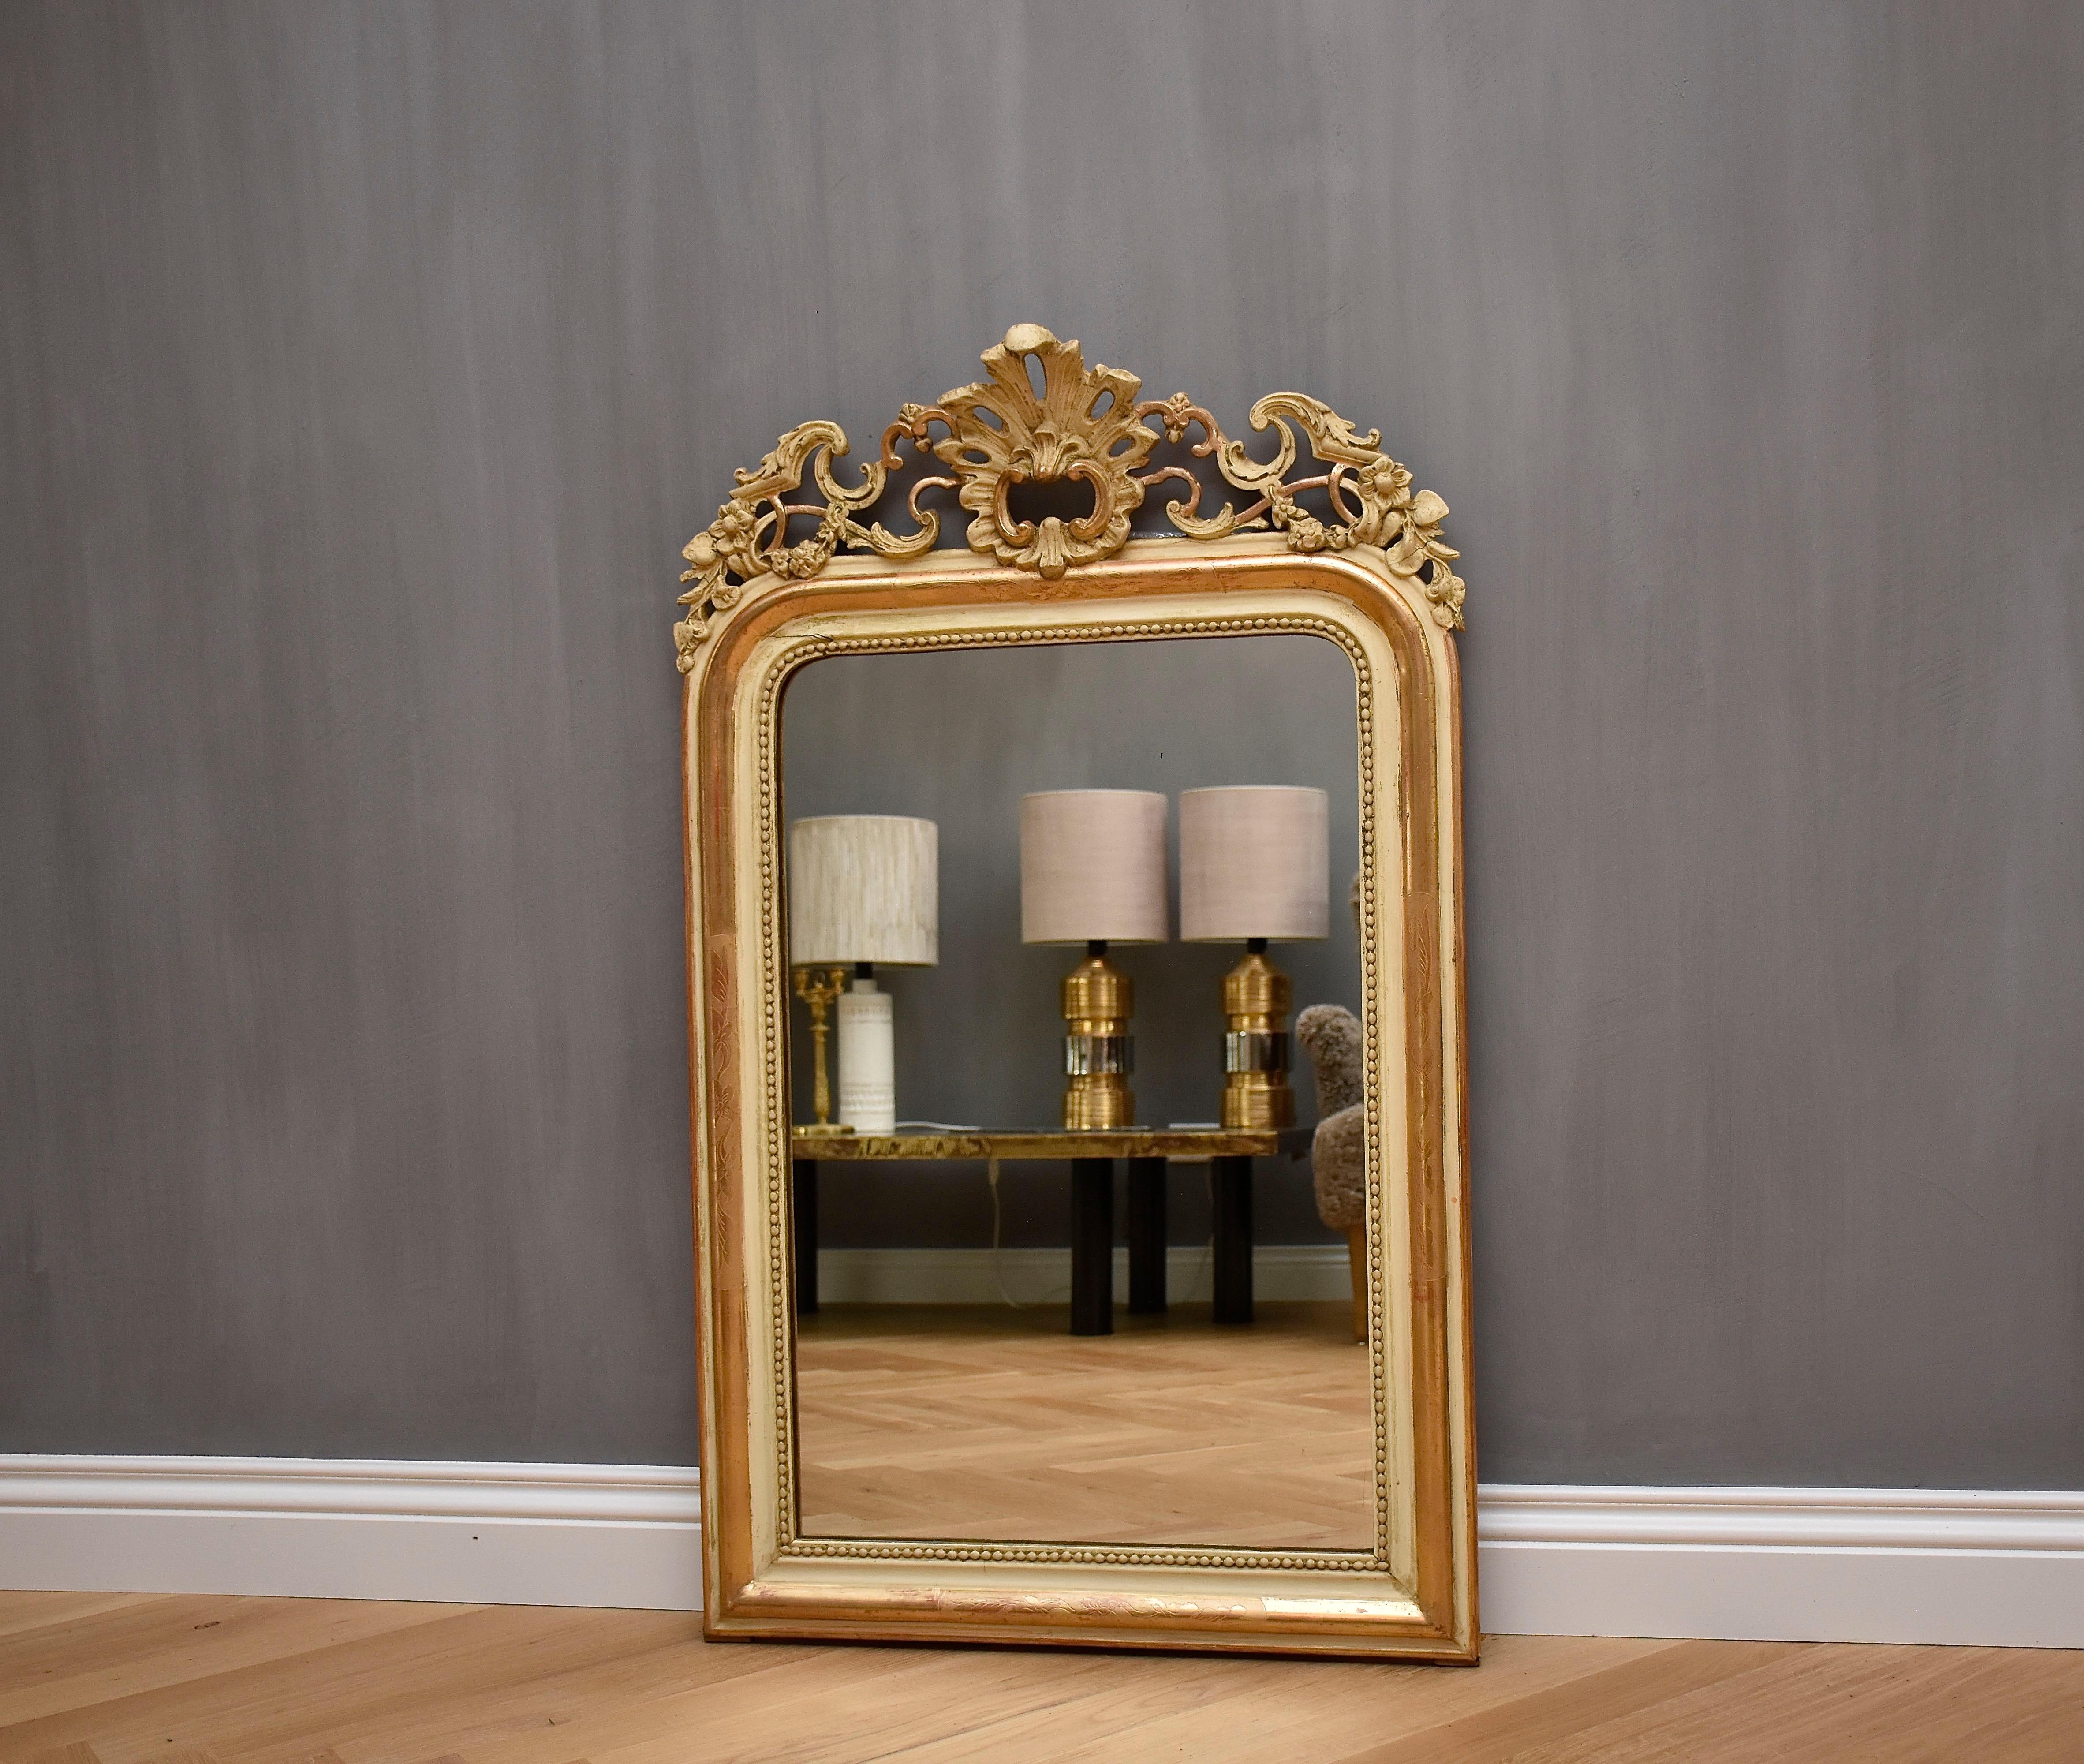 Magnifique miroir français ancien avec une fabuleuse crête et une vitre d'origine légèrement roussie.
Le cimier est orné d'une décoration florale et de C-scrolls.
Le cadre est de couleur blanc cassé, doré à la feuille d'or et doté d'un bord